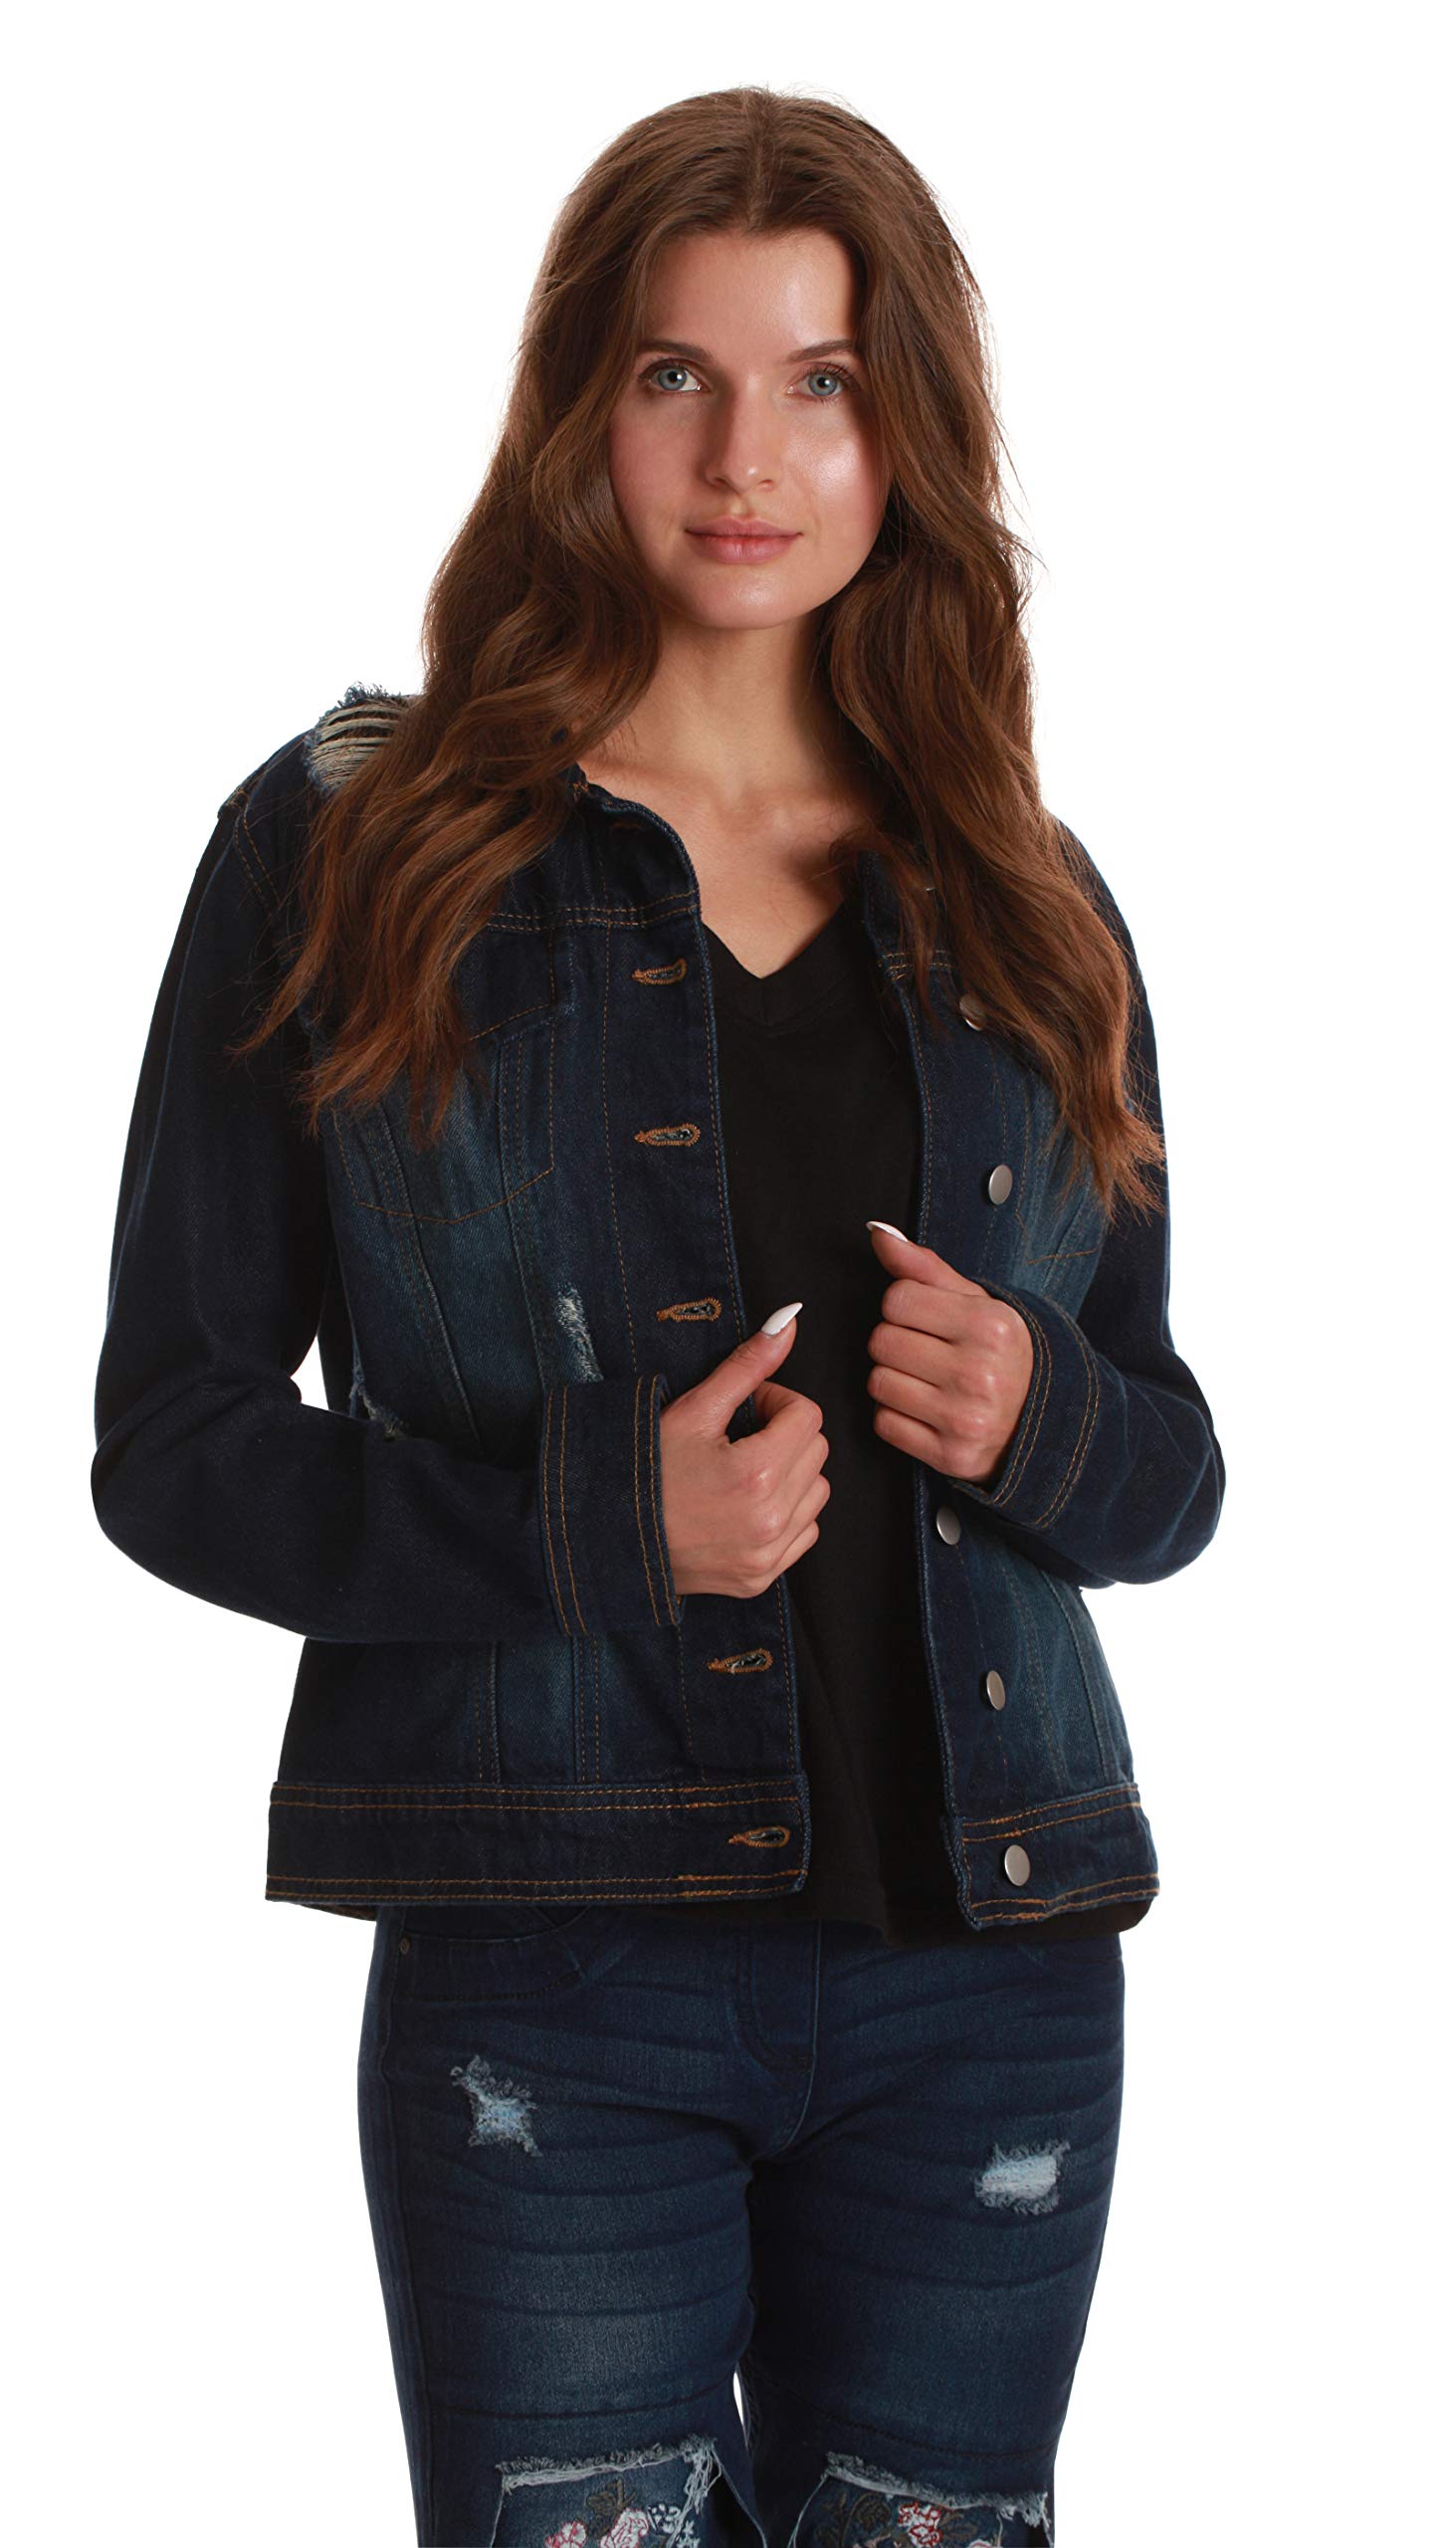 Just Love Denim Jackets for Women 6879-LTDEN-XXXL (Dark Denim, Large) - image 1 of 3